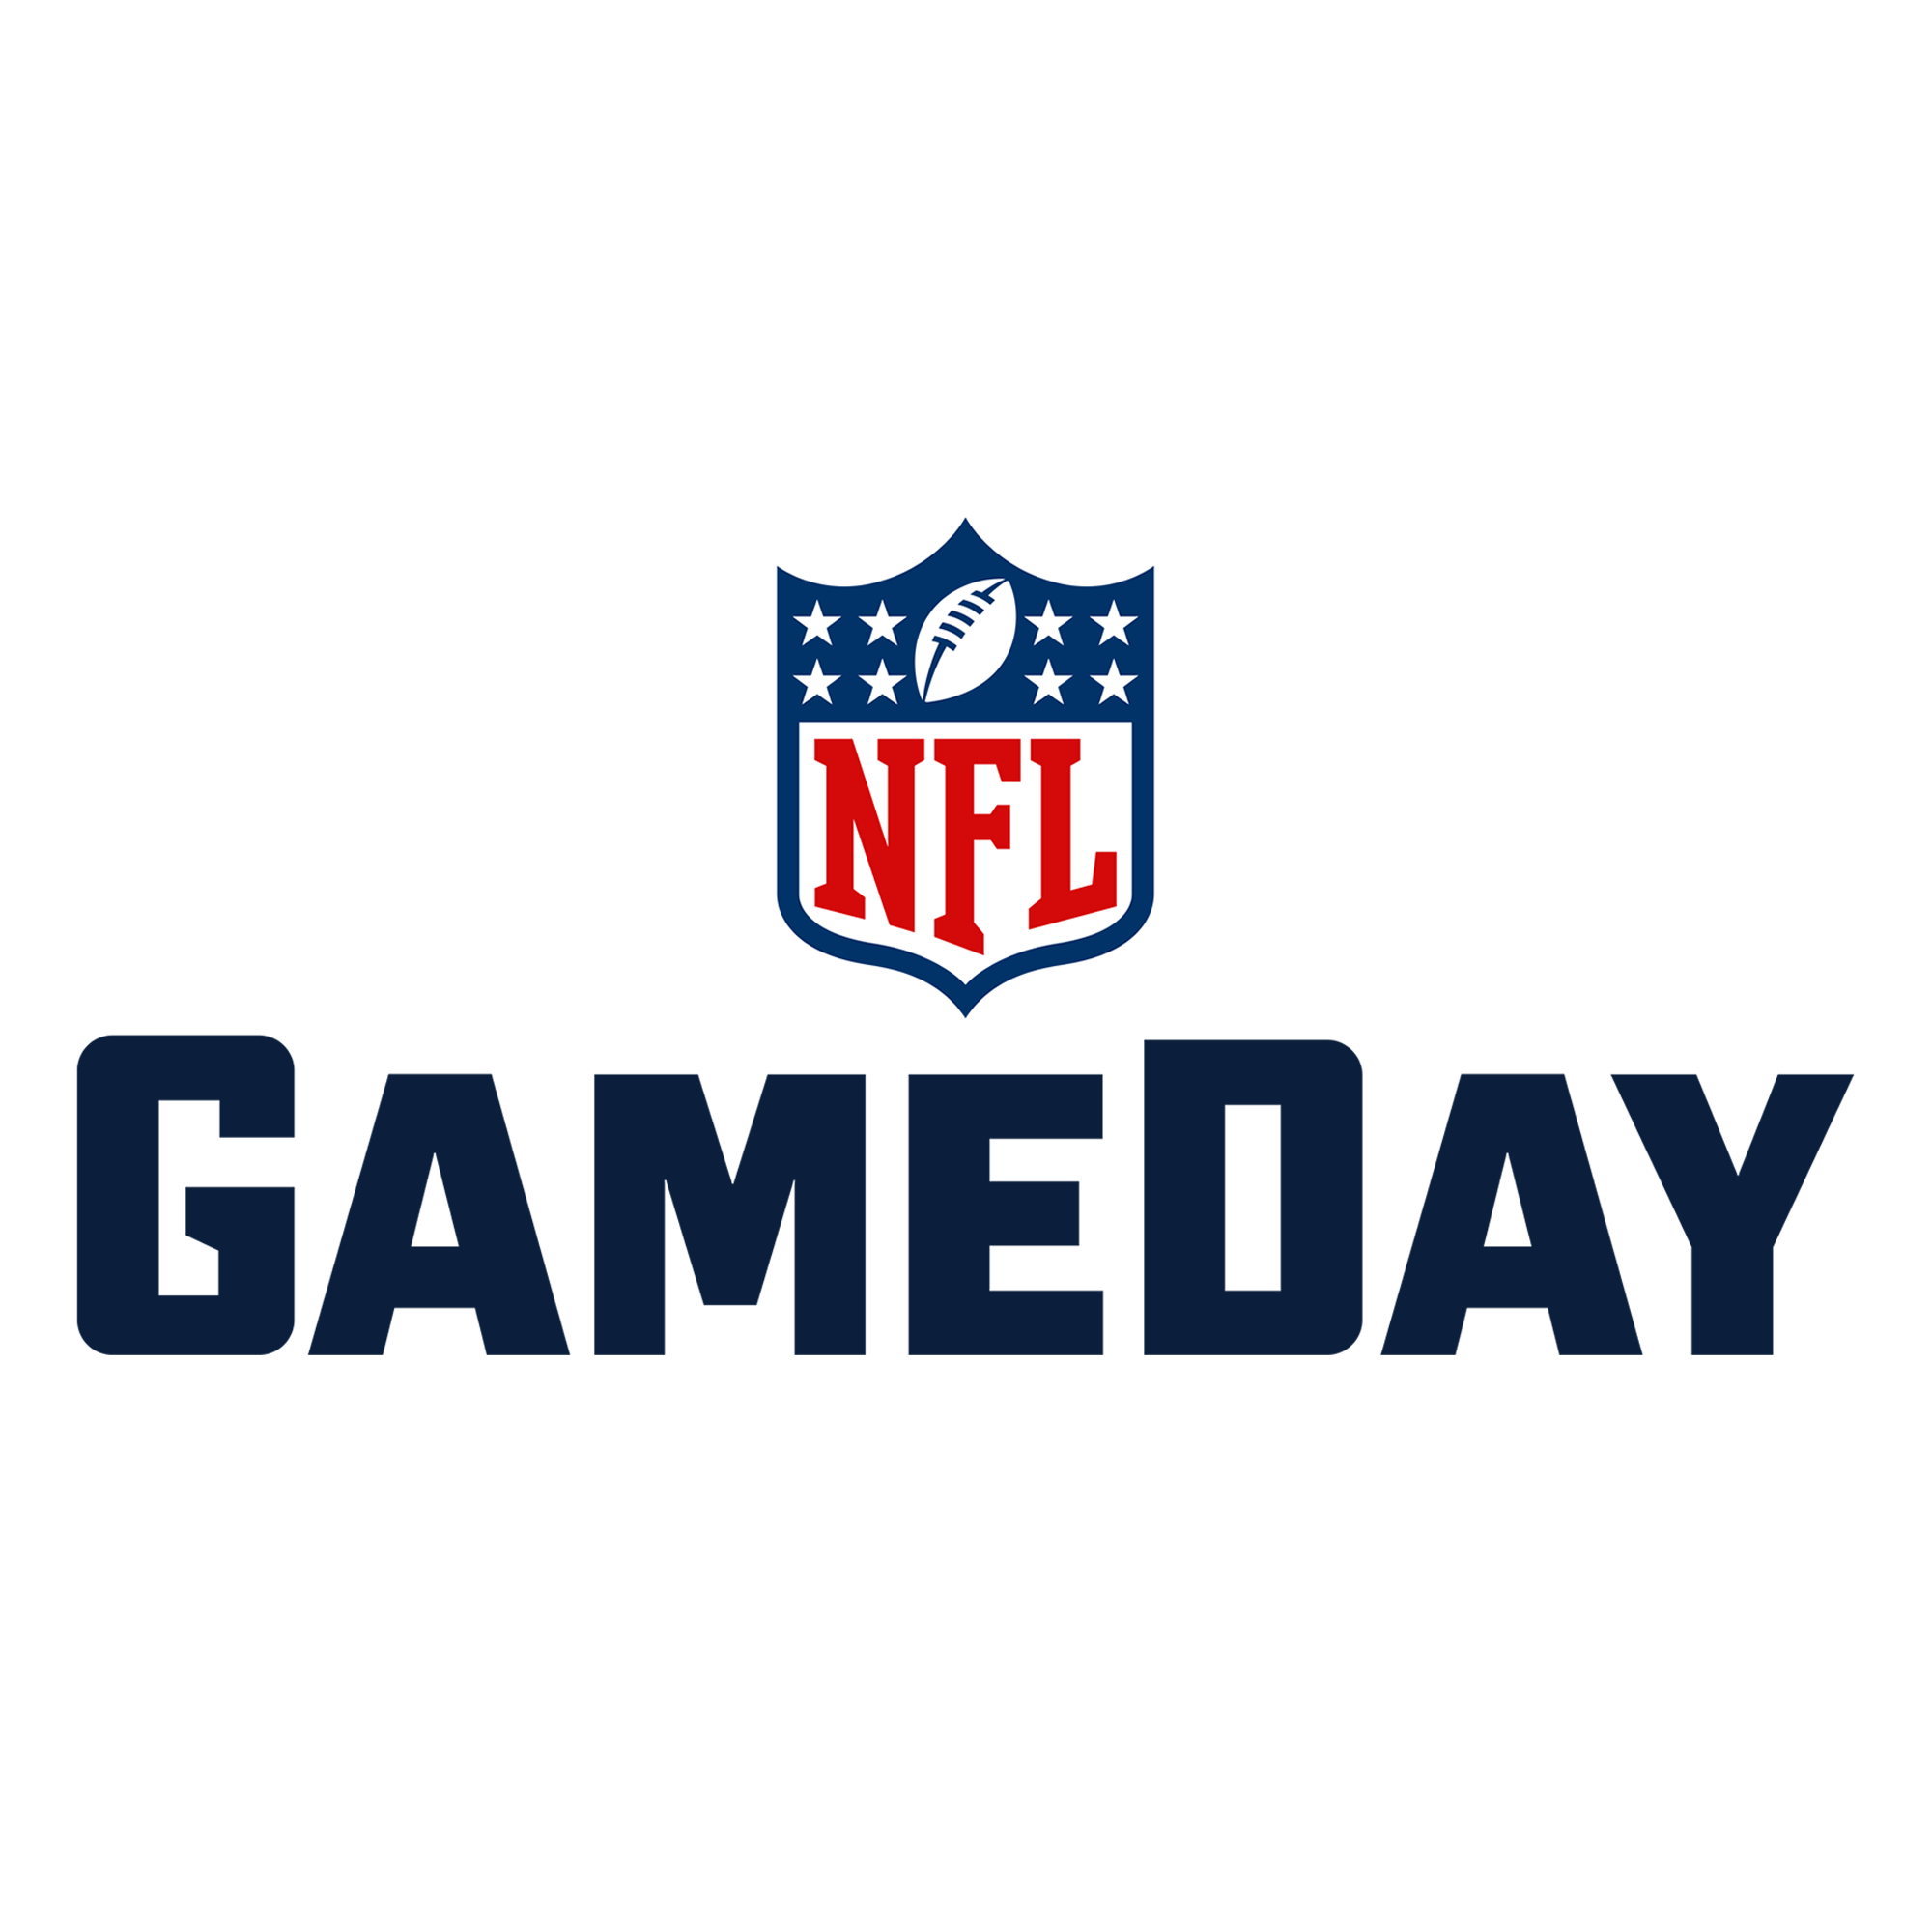 NFL GameDay - NFL Network | NFL.com